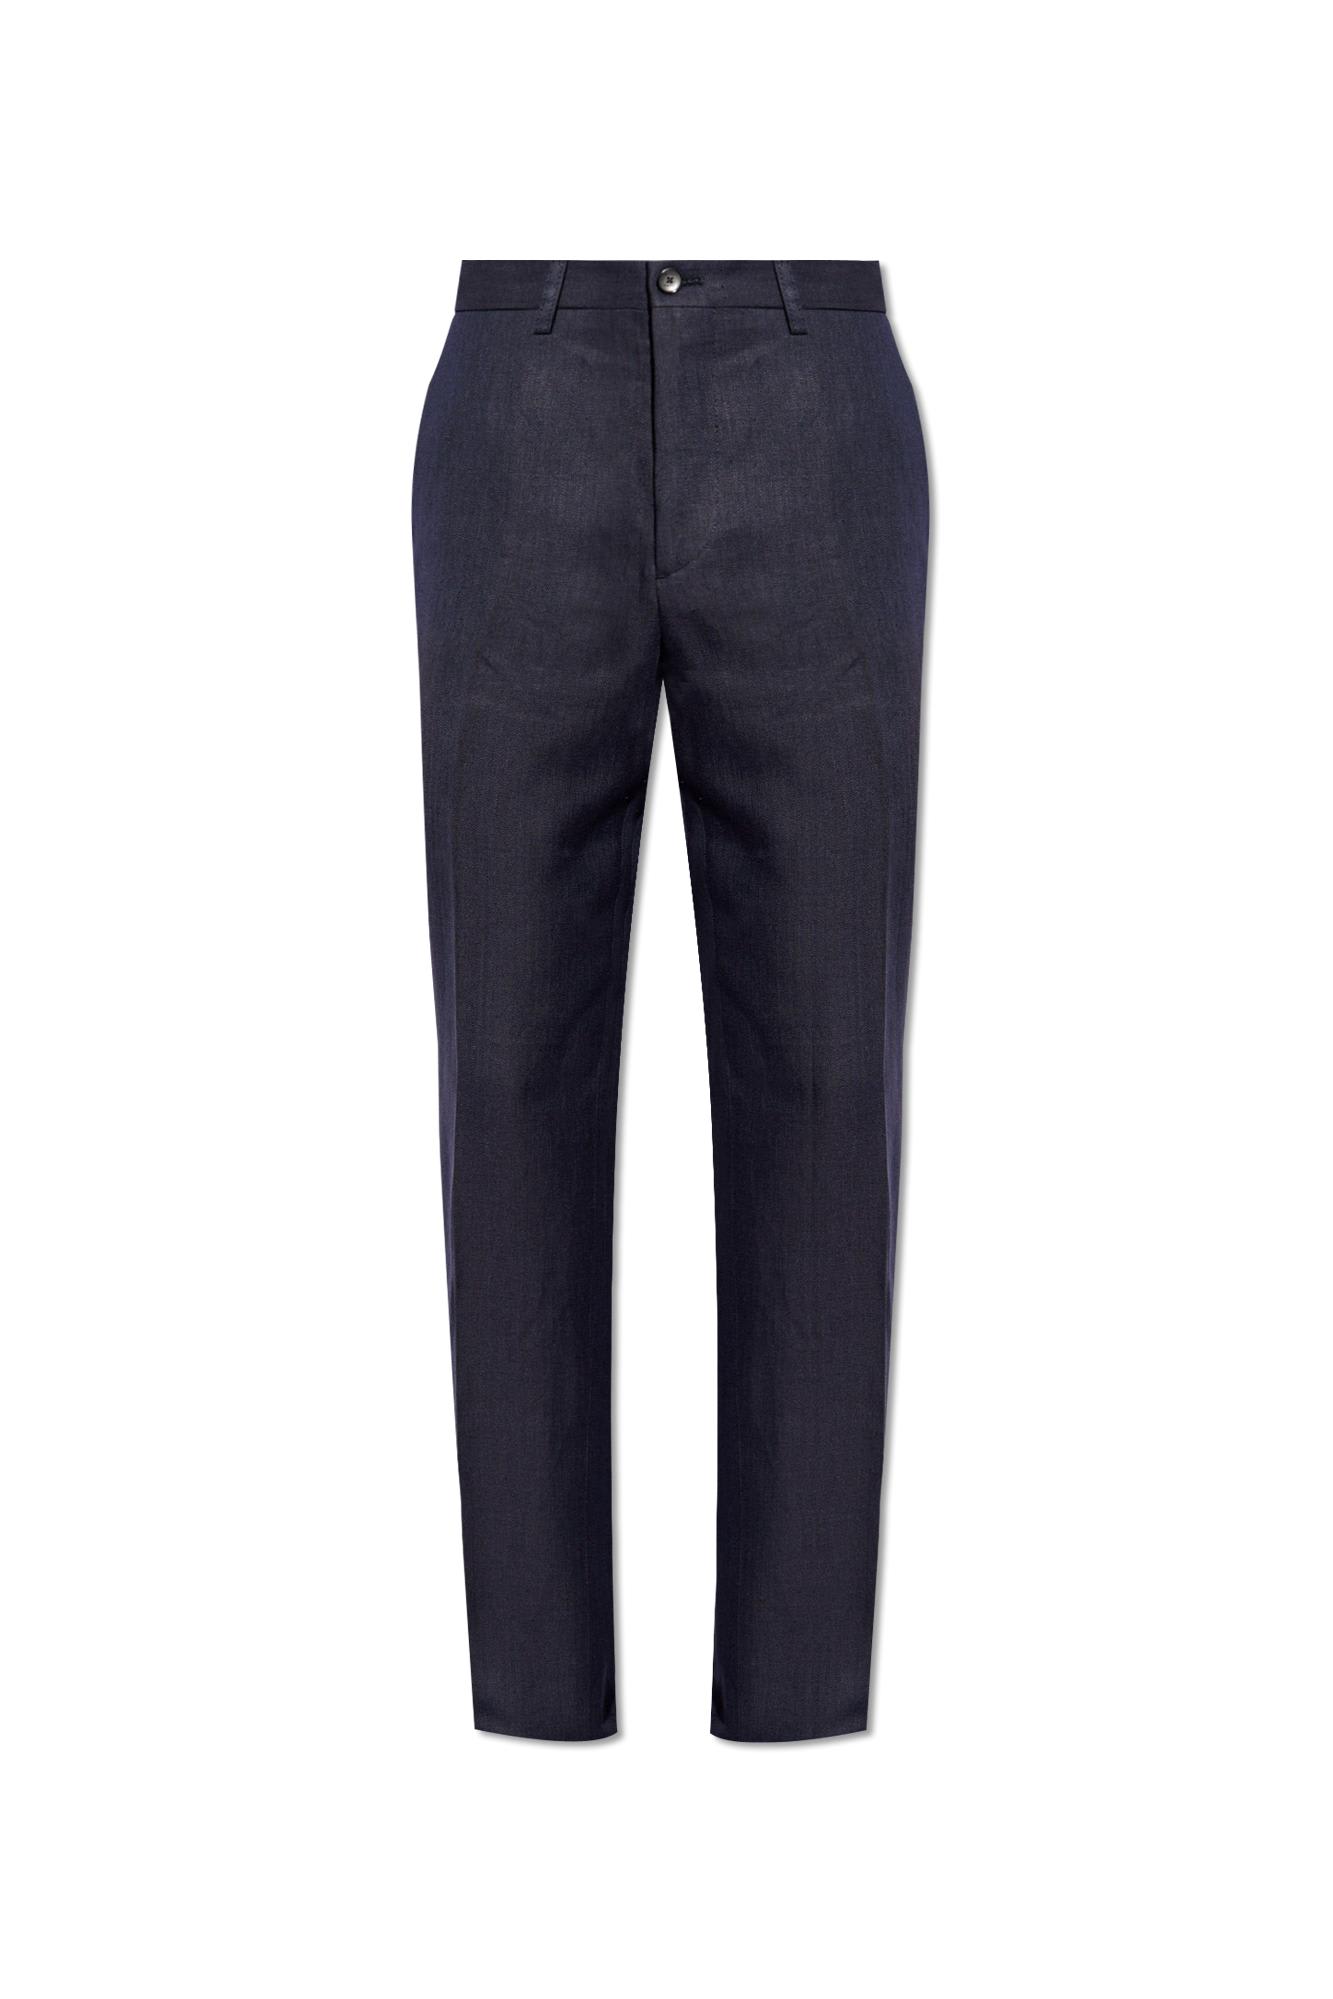 Shop Etro Linen Pleat-front Trousers